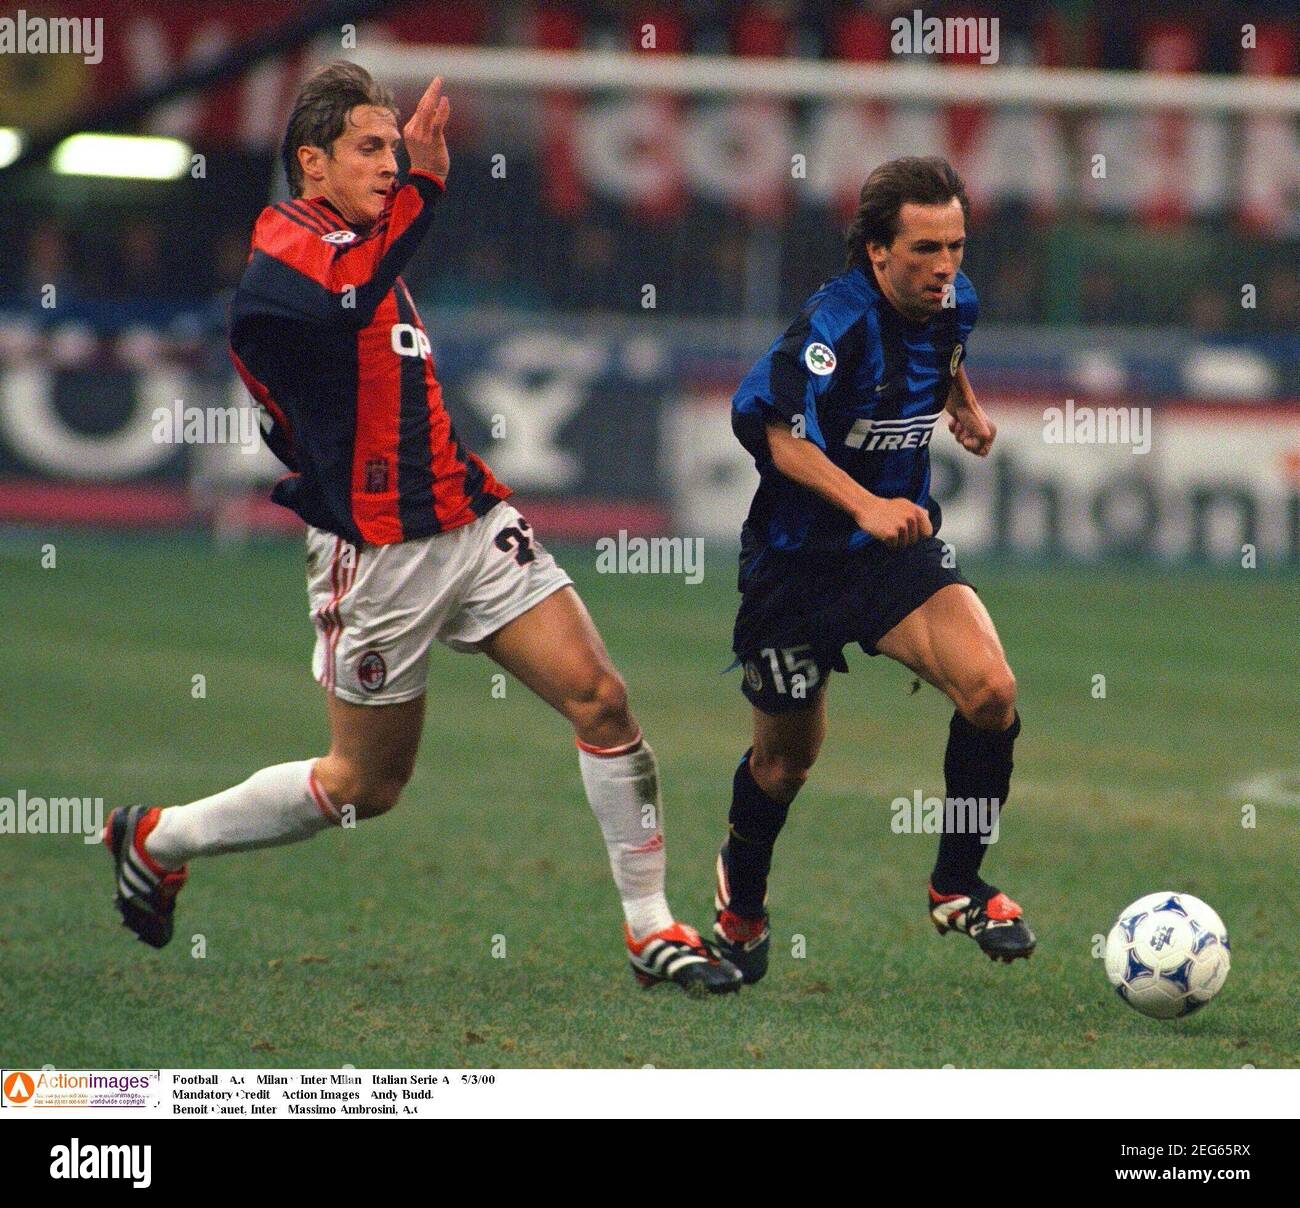 Calcio - a.C. Milano v Inter Milan - Serie a - 5/3/00 credito obbligatorio  - immagini d'azione / Andy Buddd. Benoit Cauet, Inter - massimo Ambrosini,  a.C Foto stock - Alamy